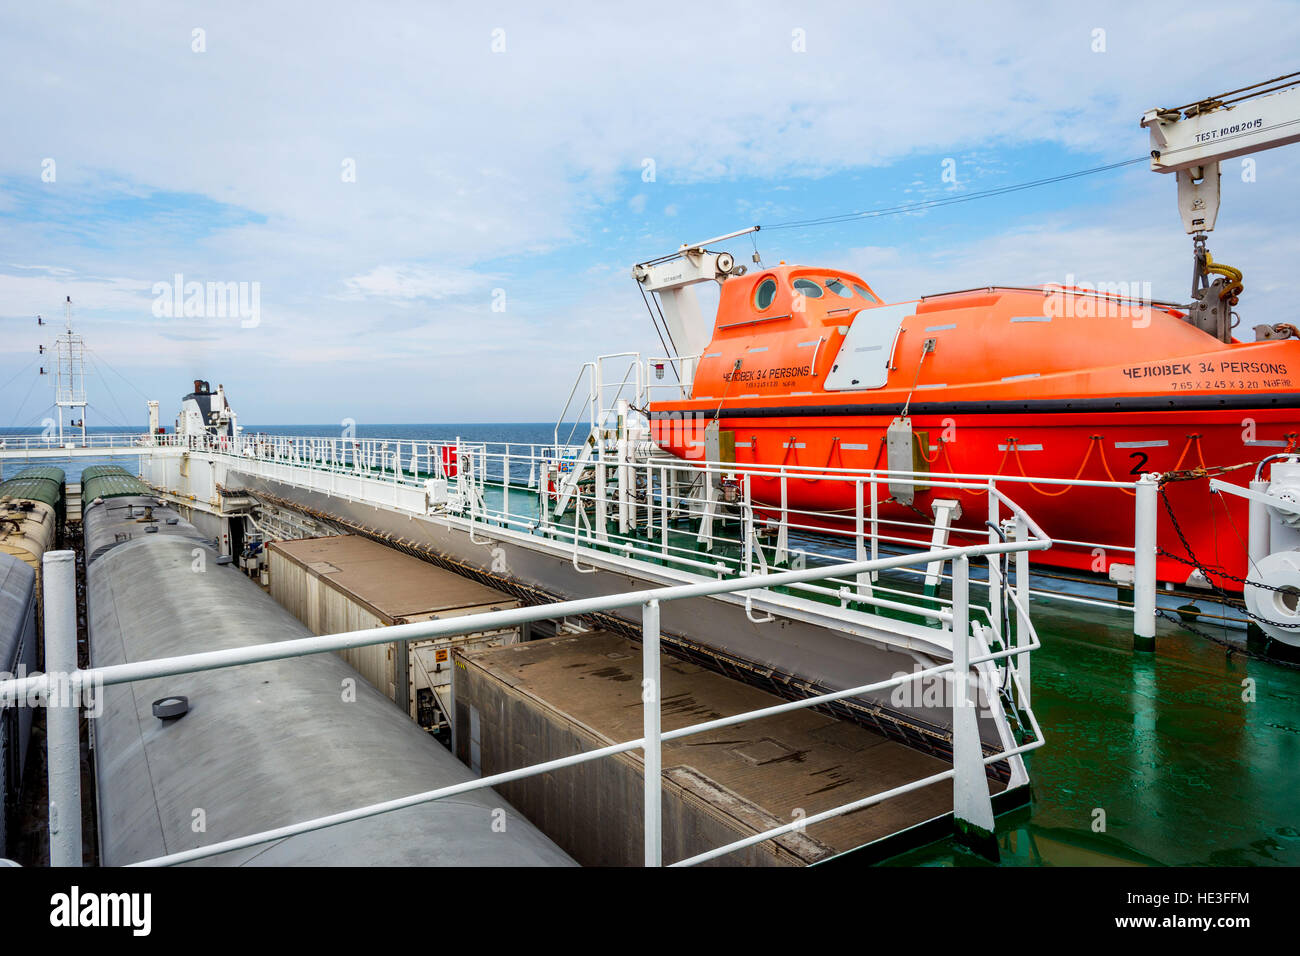 Orange rescue boat on the cargo vessel at the sea Stock Photo